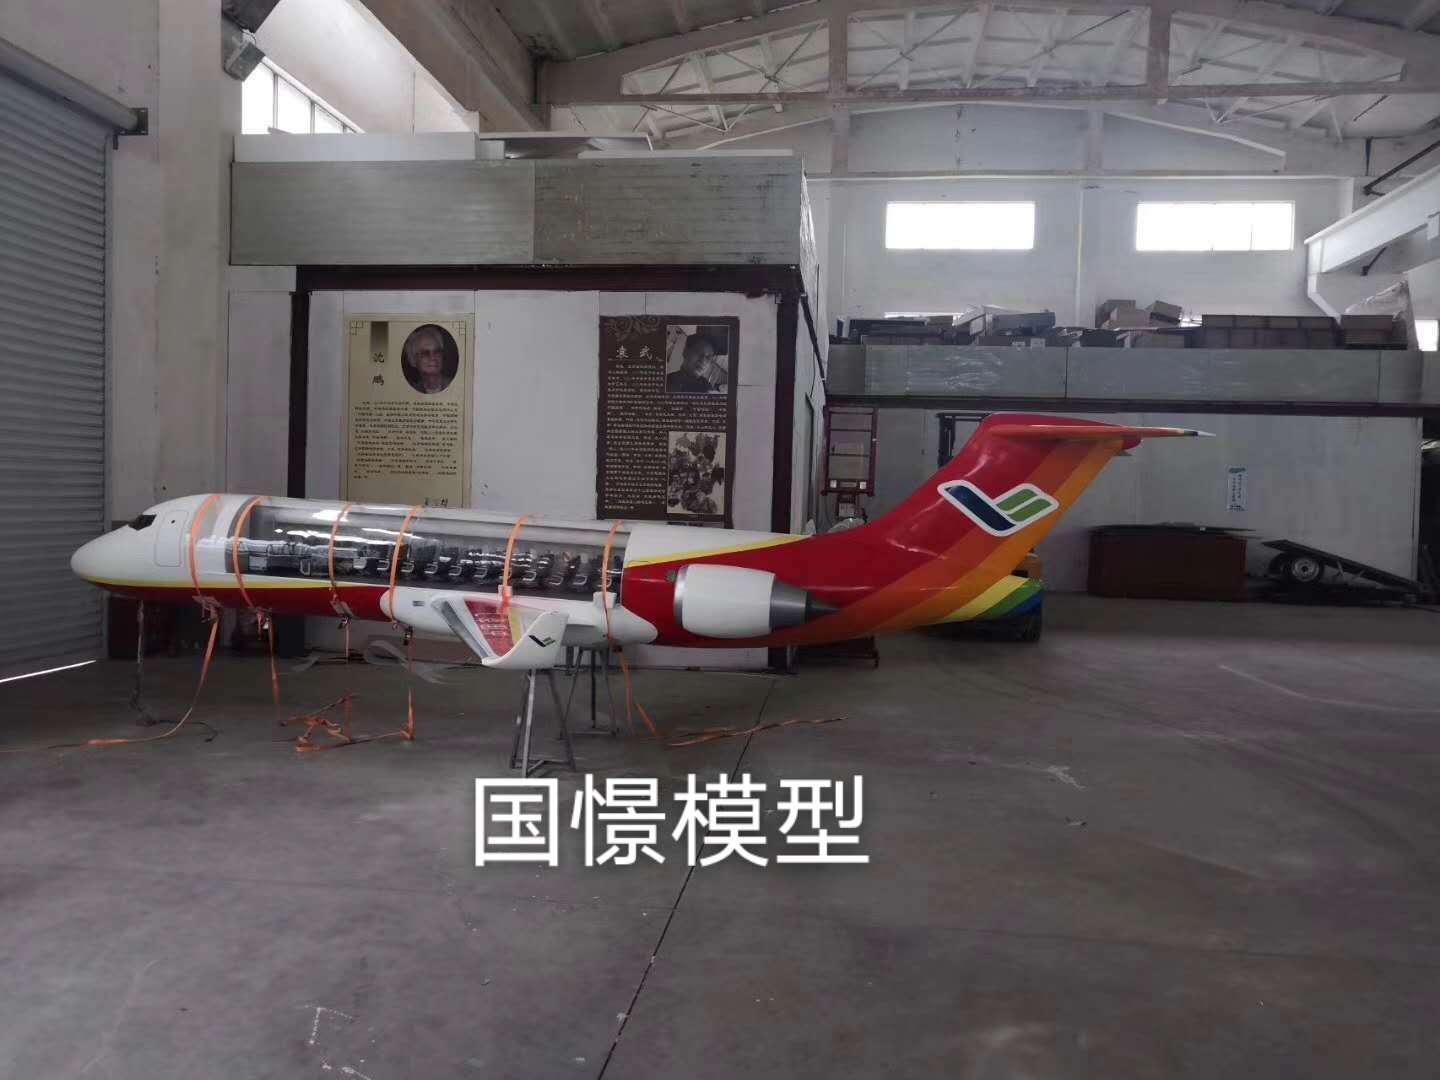 中宁县飞机模型